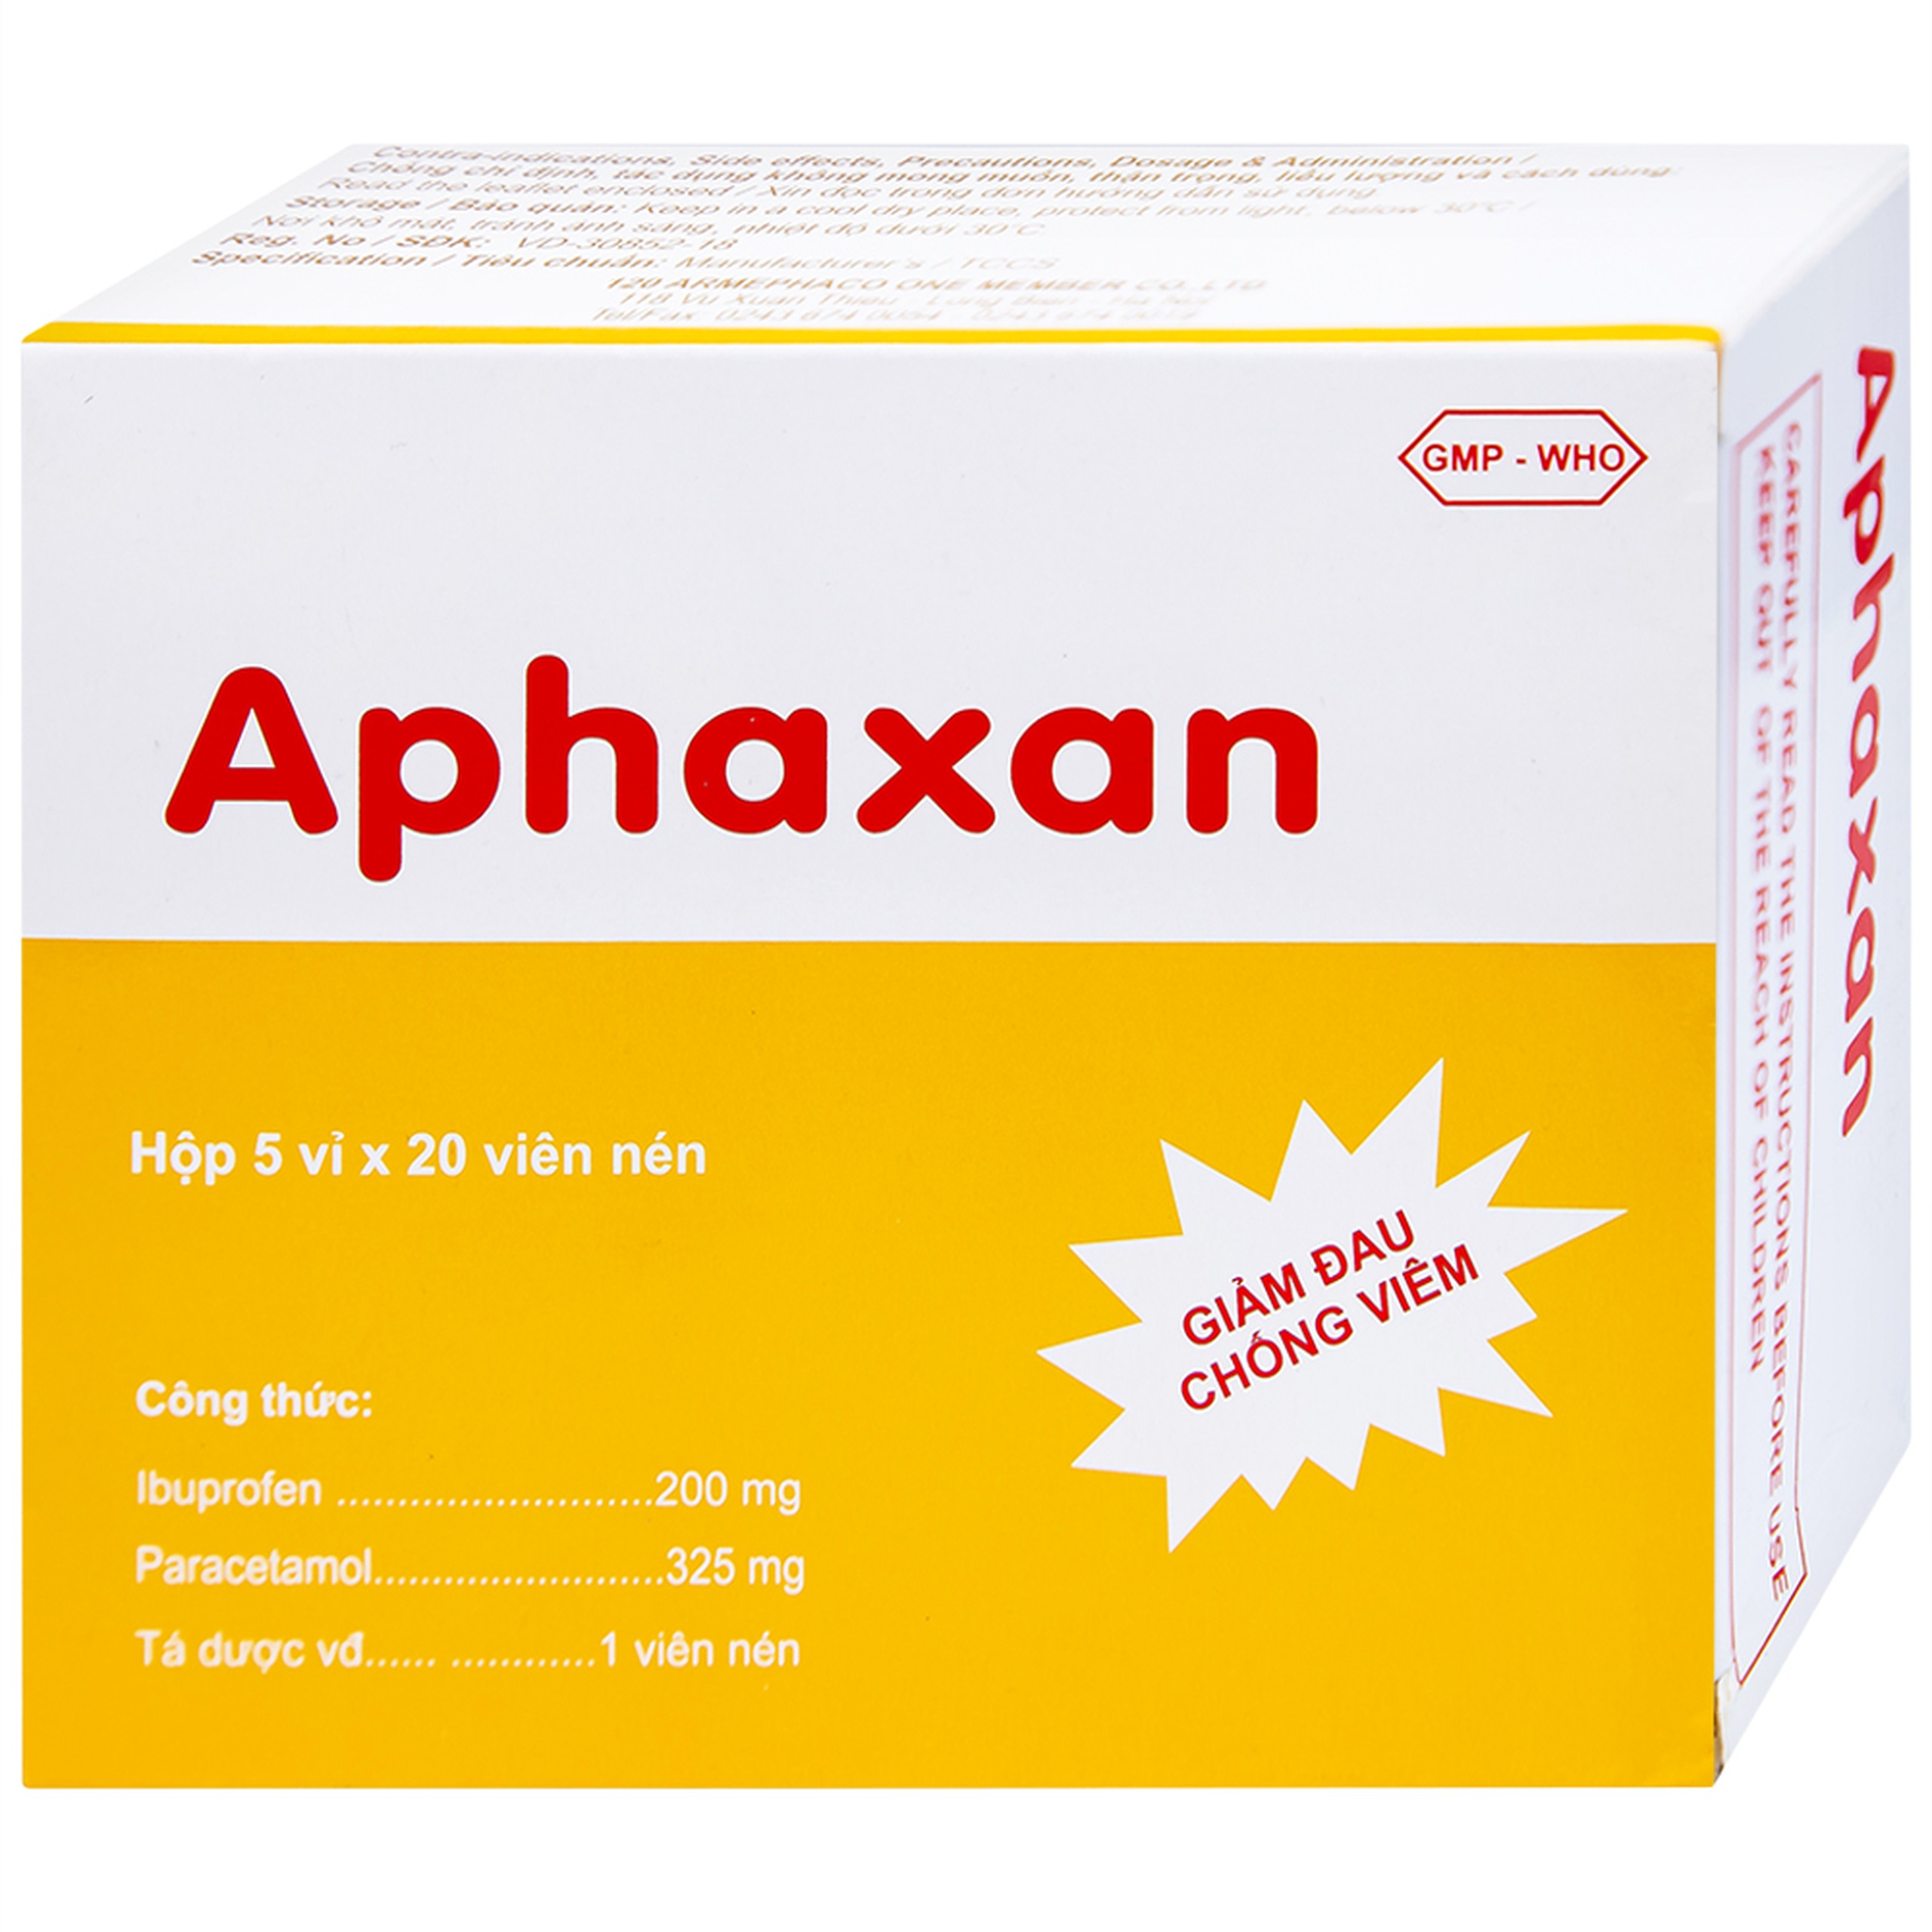 Thuốc Aphaxan Armephaco giảm đau, chống viêm (5 vỉ x 20 viên)